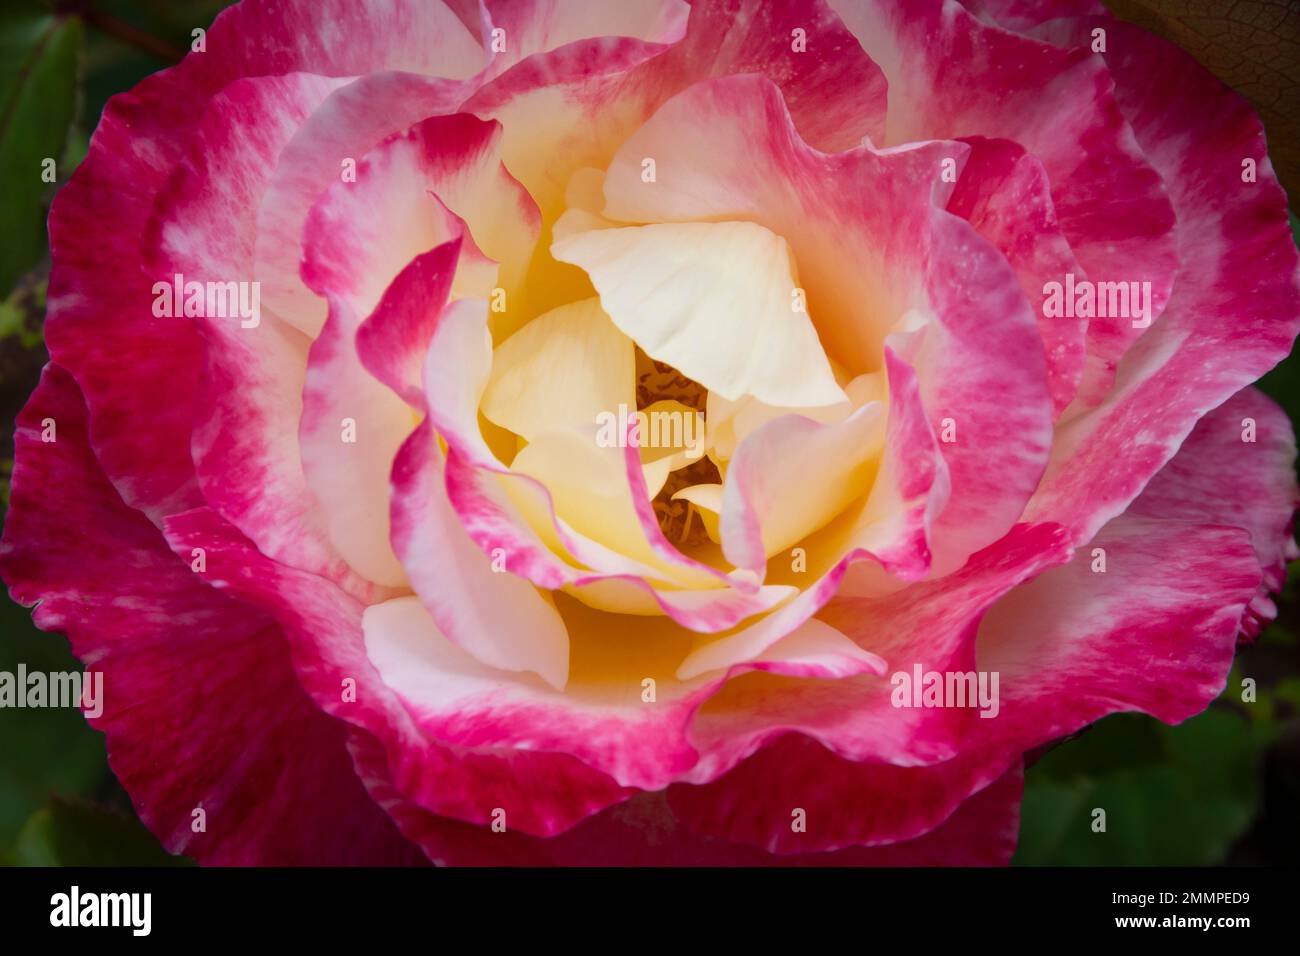 Rose flower, Botanical Gardens, Wellington, North Island, New Zealand Stock Photo